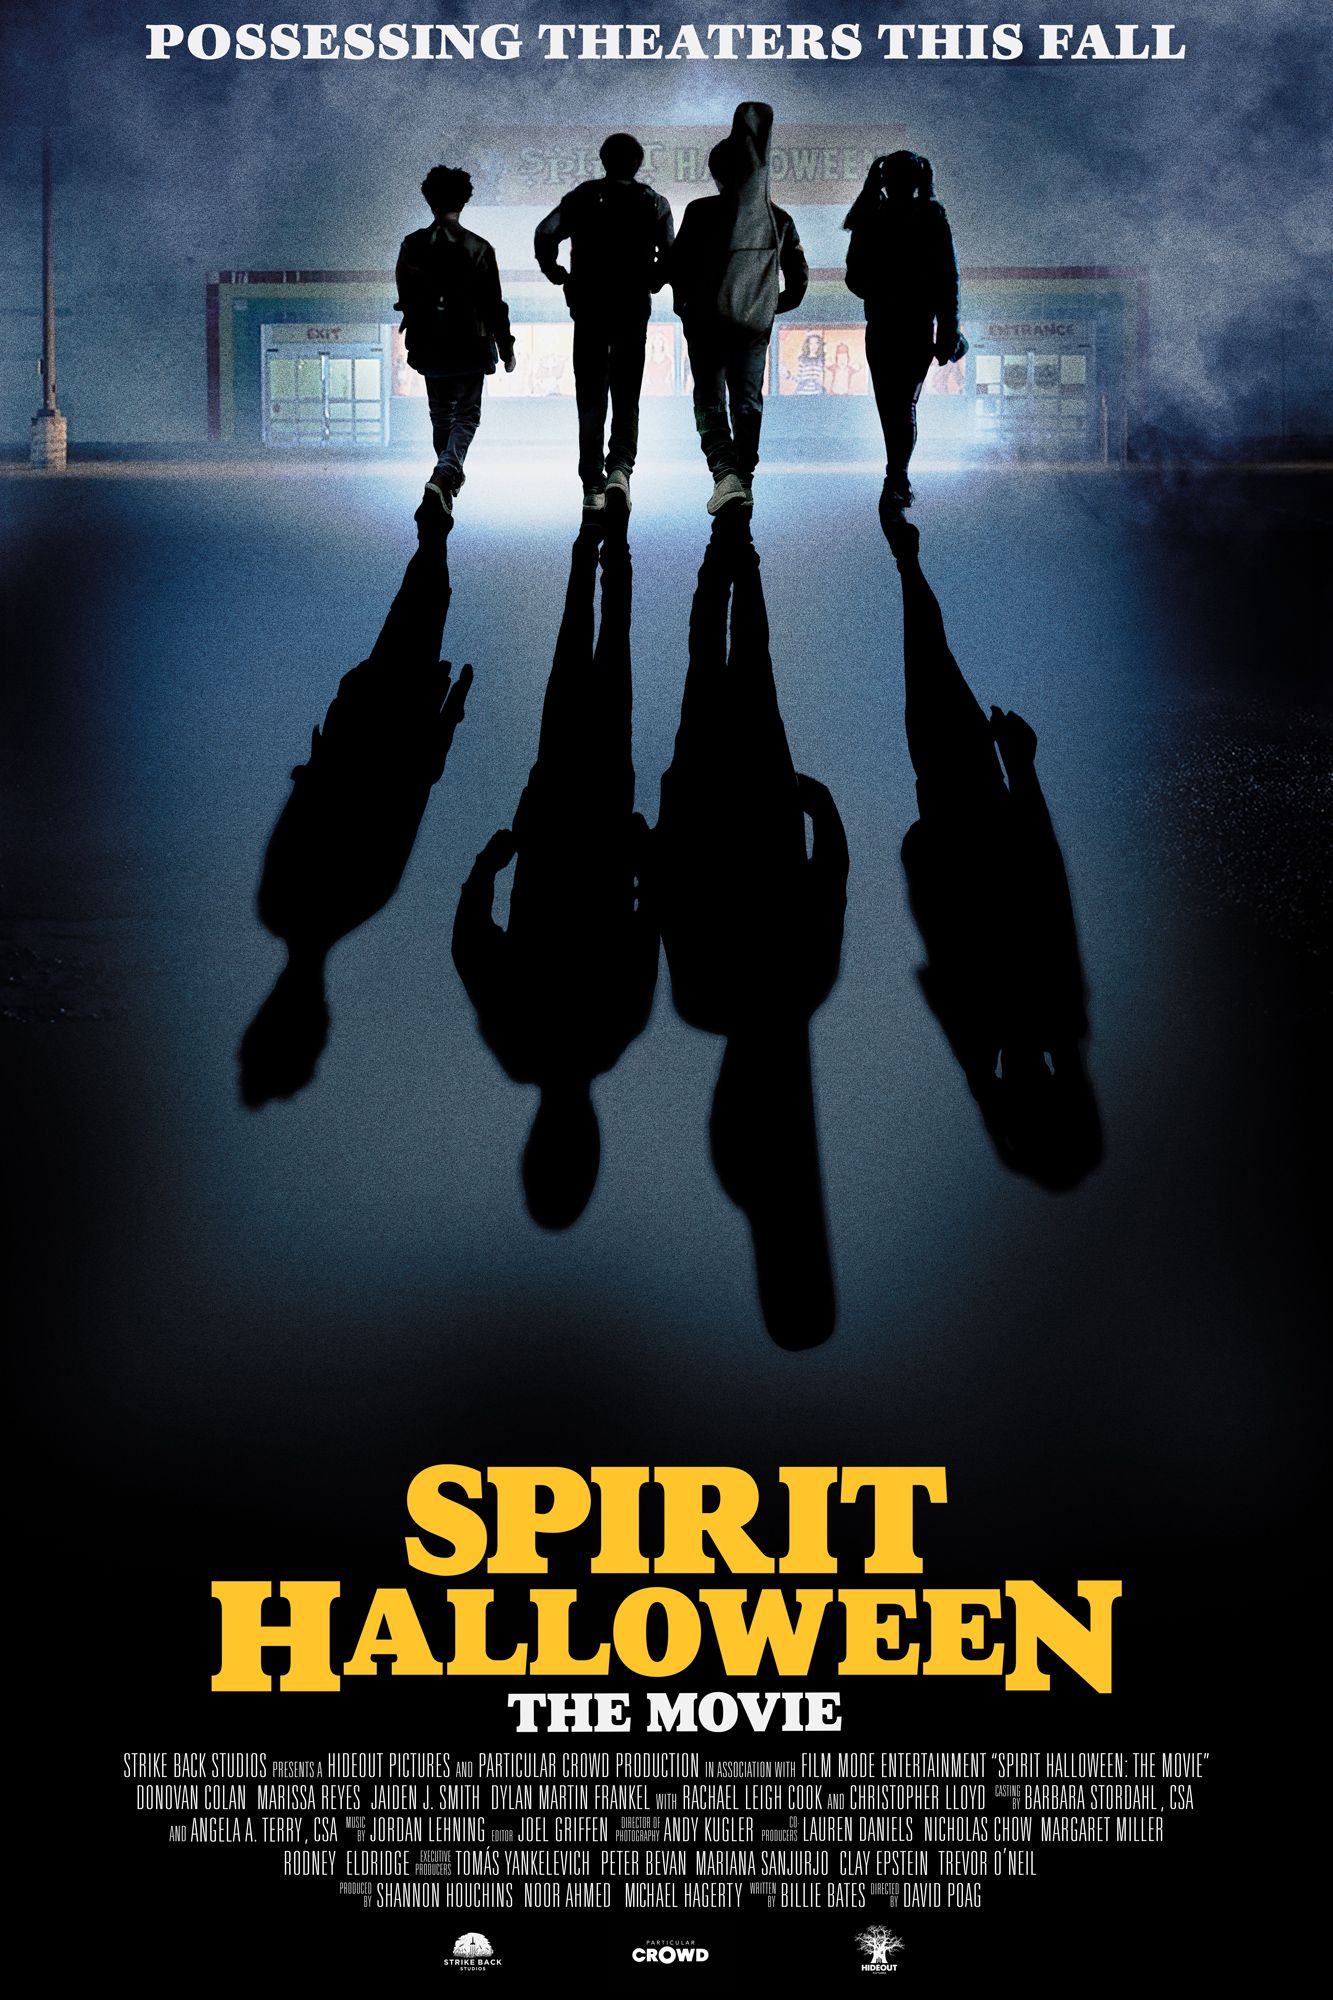 Spirit-Halloween-movie-poster-1